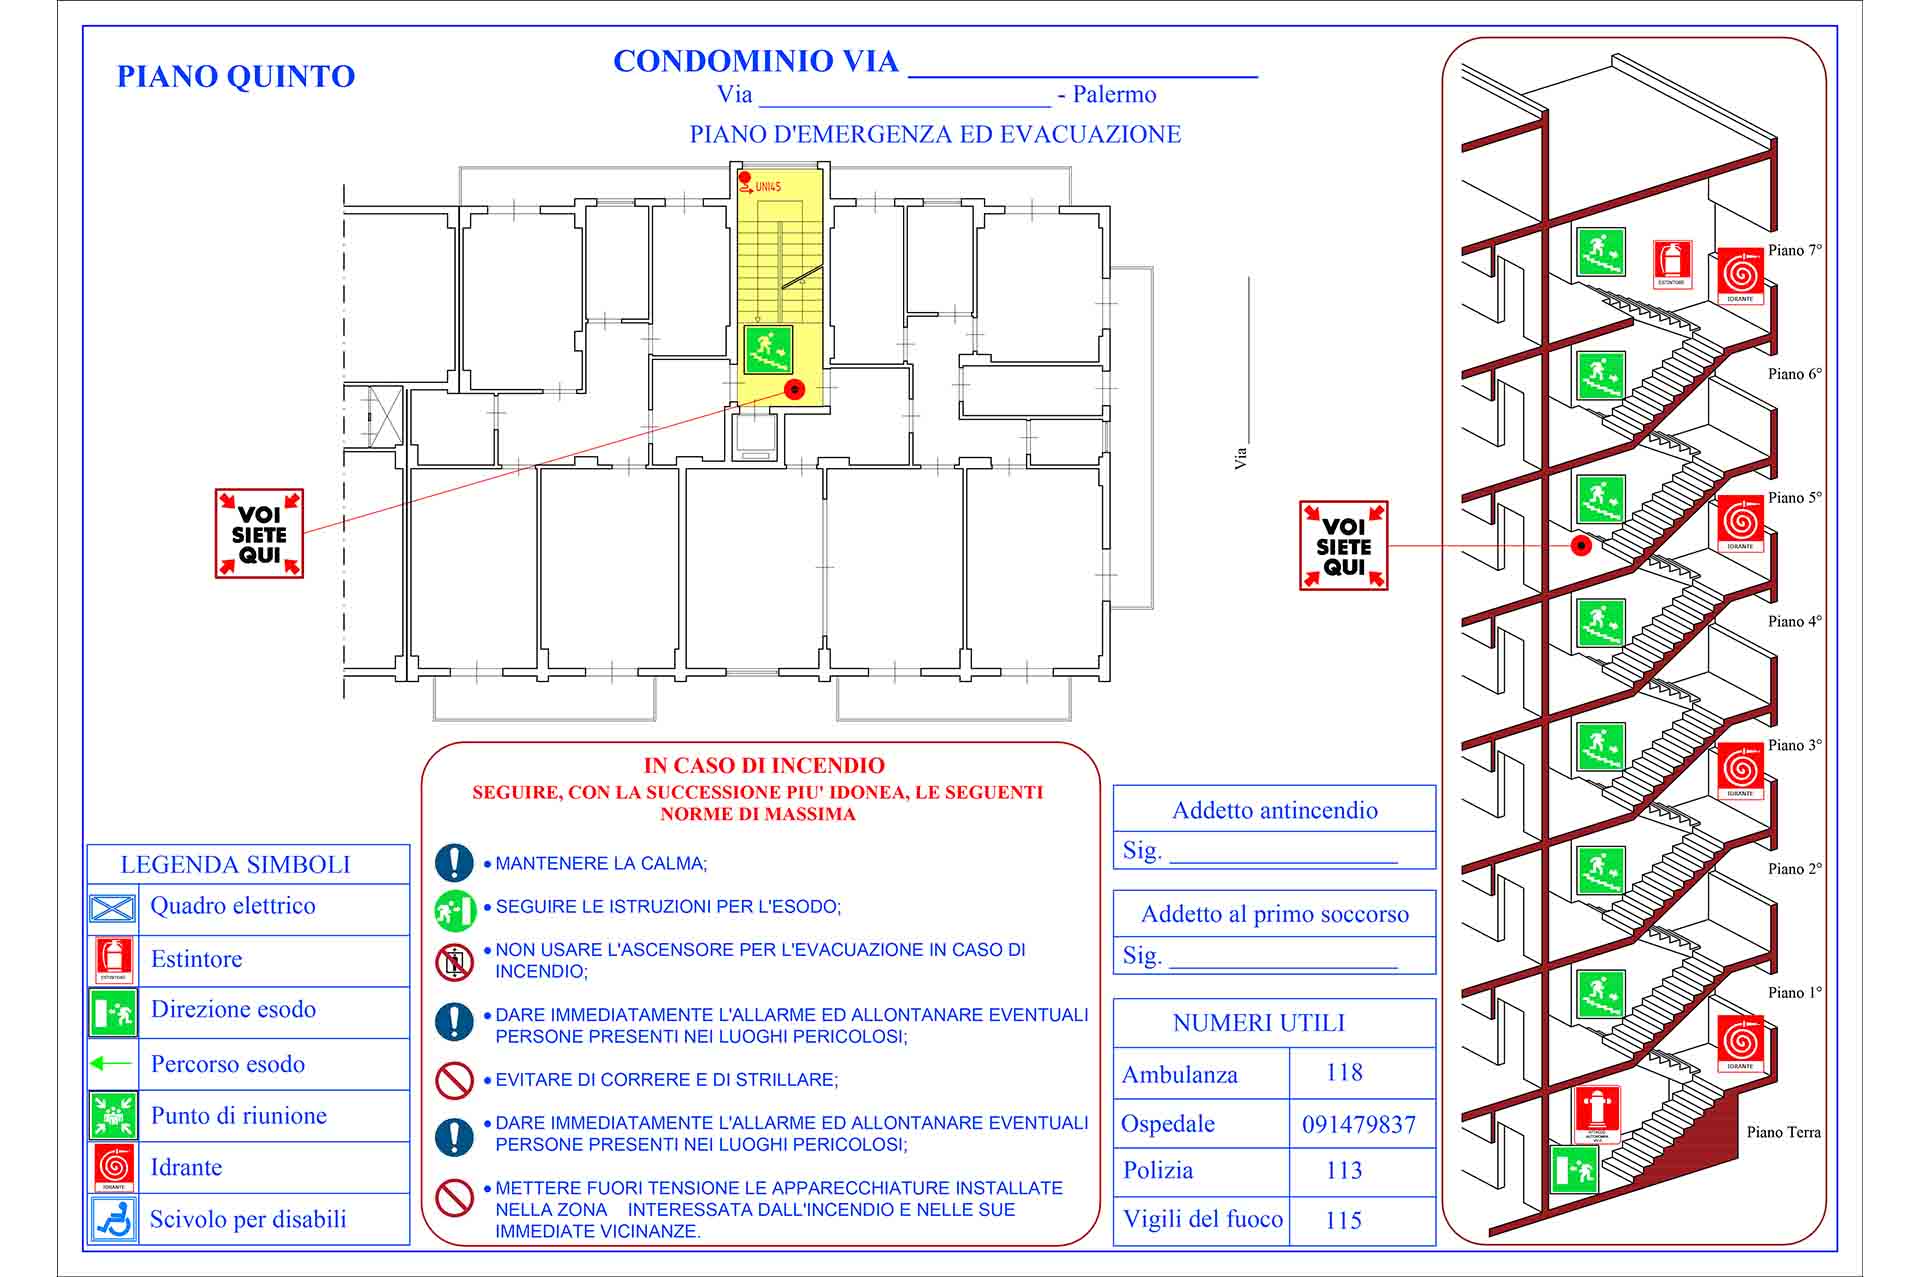 Piano di emergenza e di evacuazione (PEE) Palermo